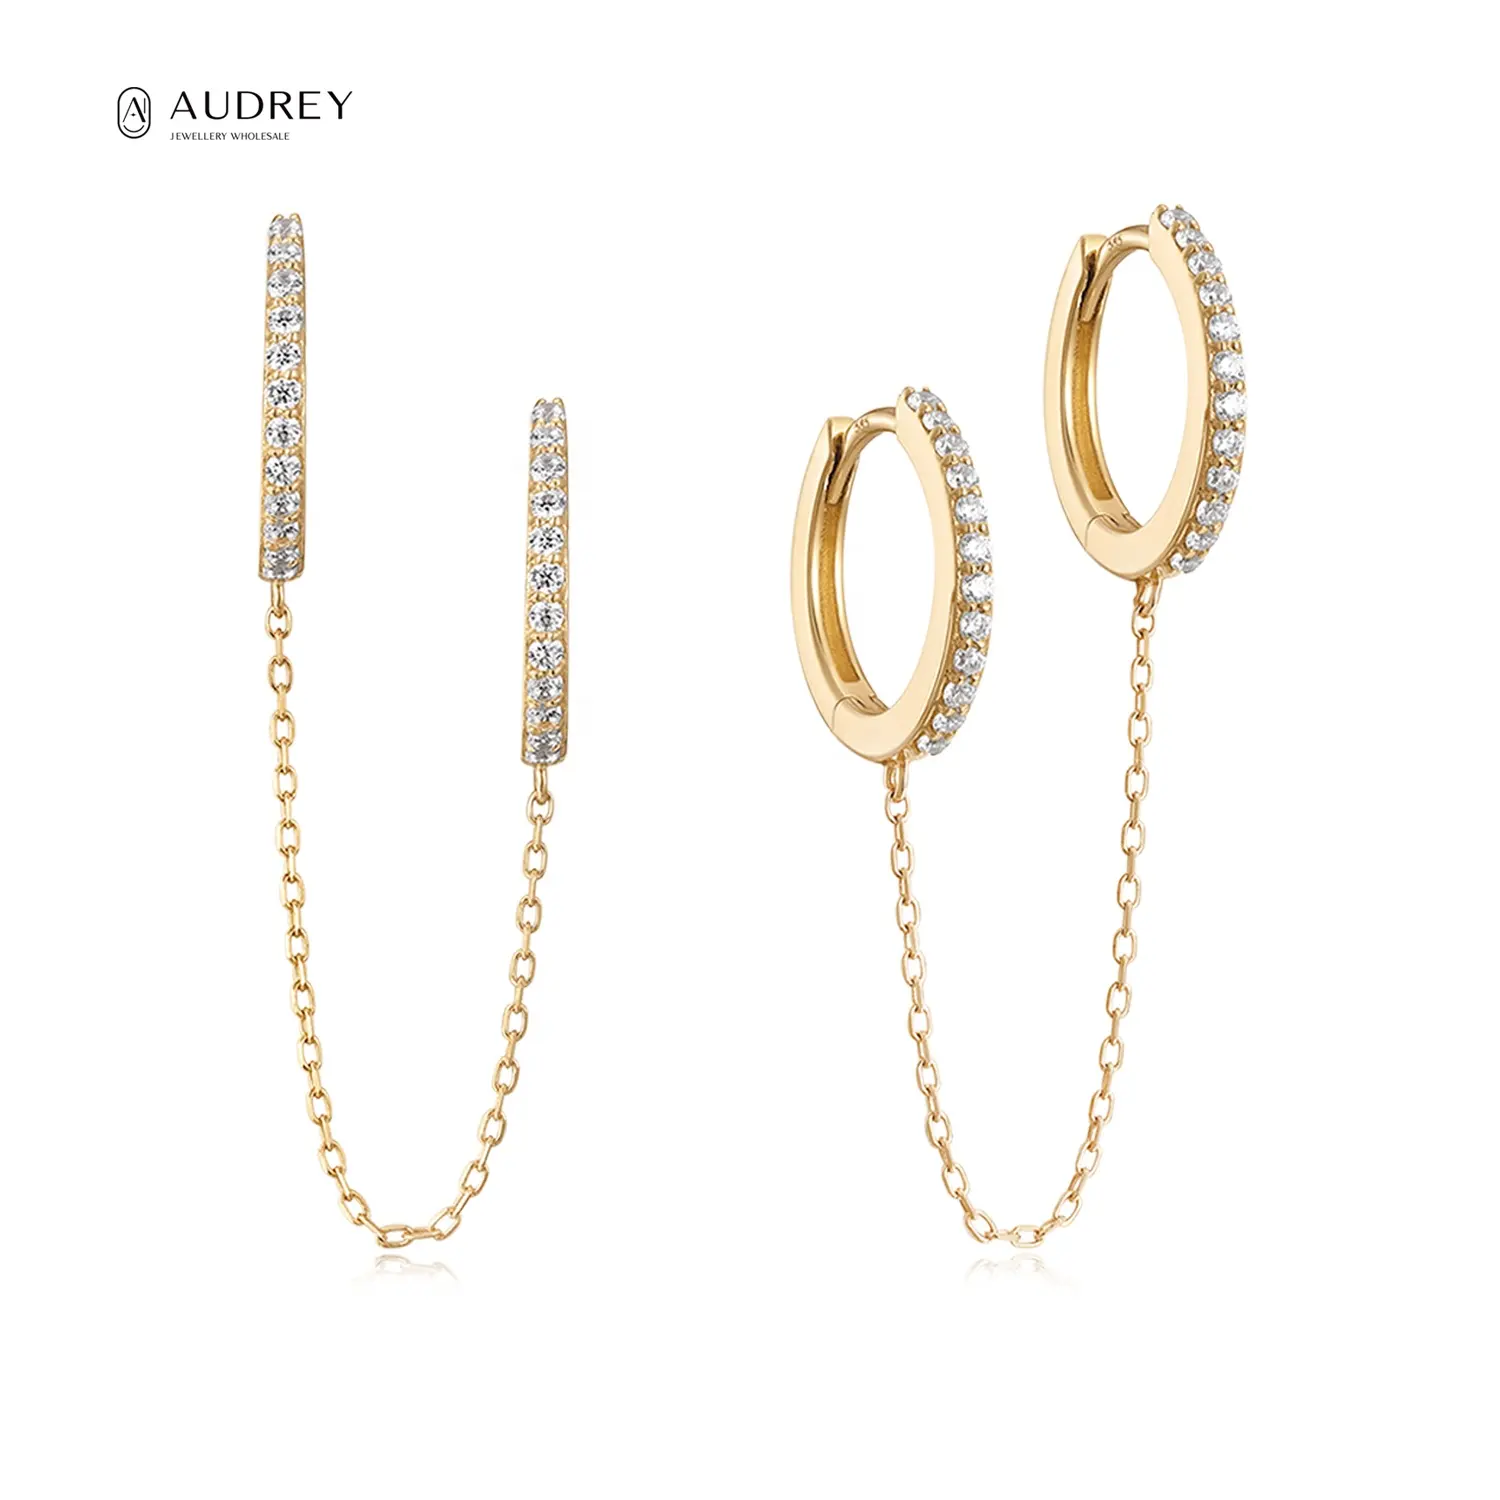 Audrey Dainty Link Chain Earrings 14K Solid Gold Hoops Huggie Dangle Long Tassel Chain Earring GH-SI Diamond Double Ear Hoops